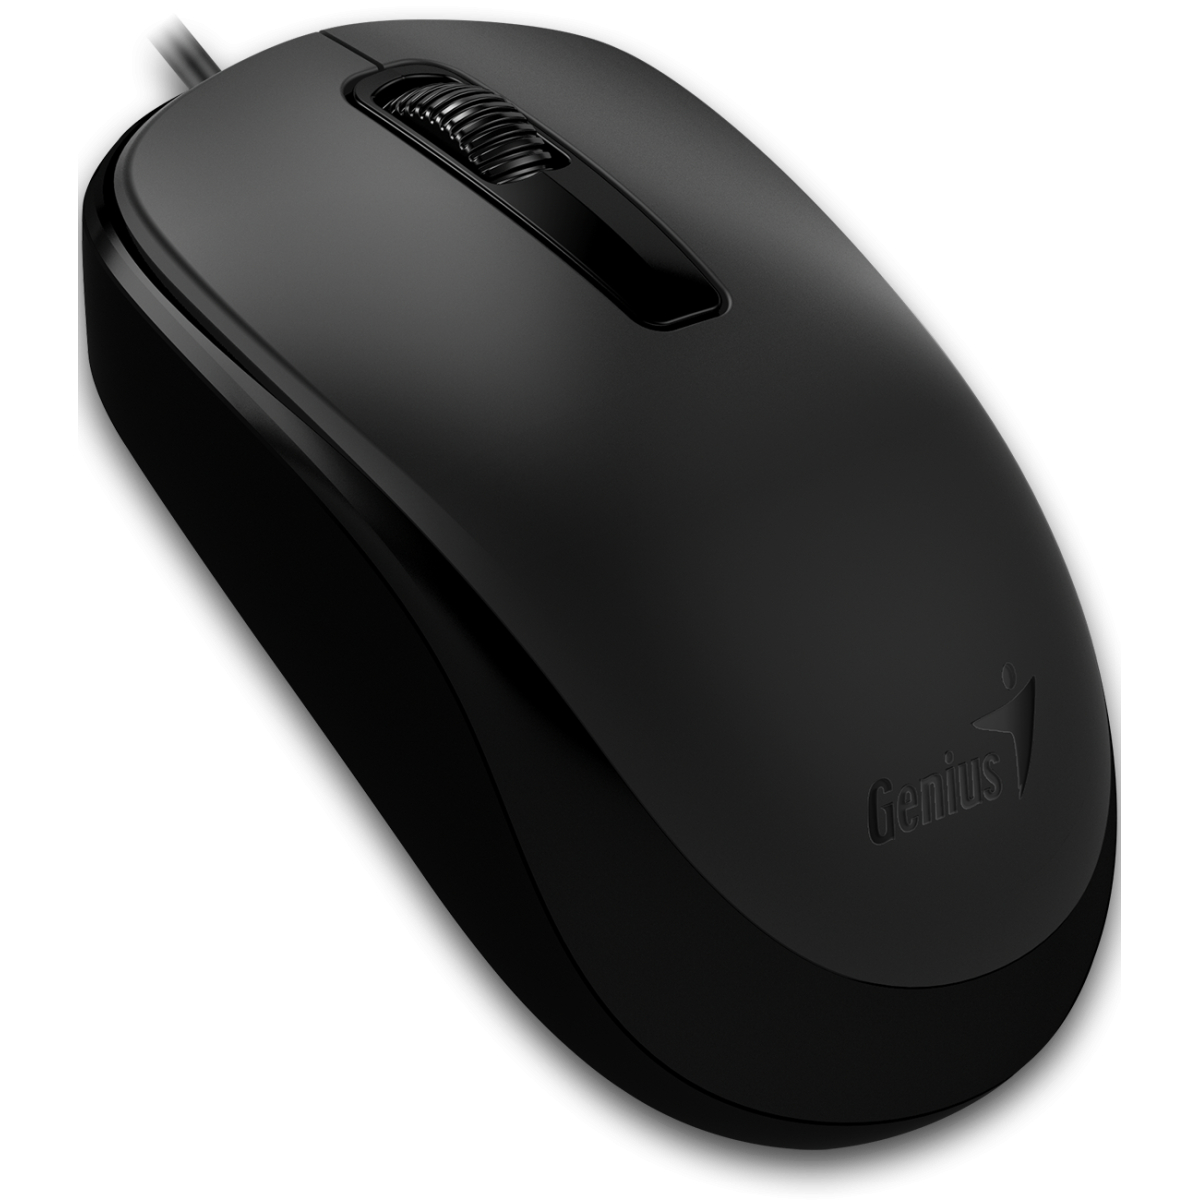 Genius DX-125 USB Mouse Black